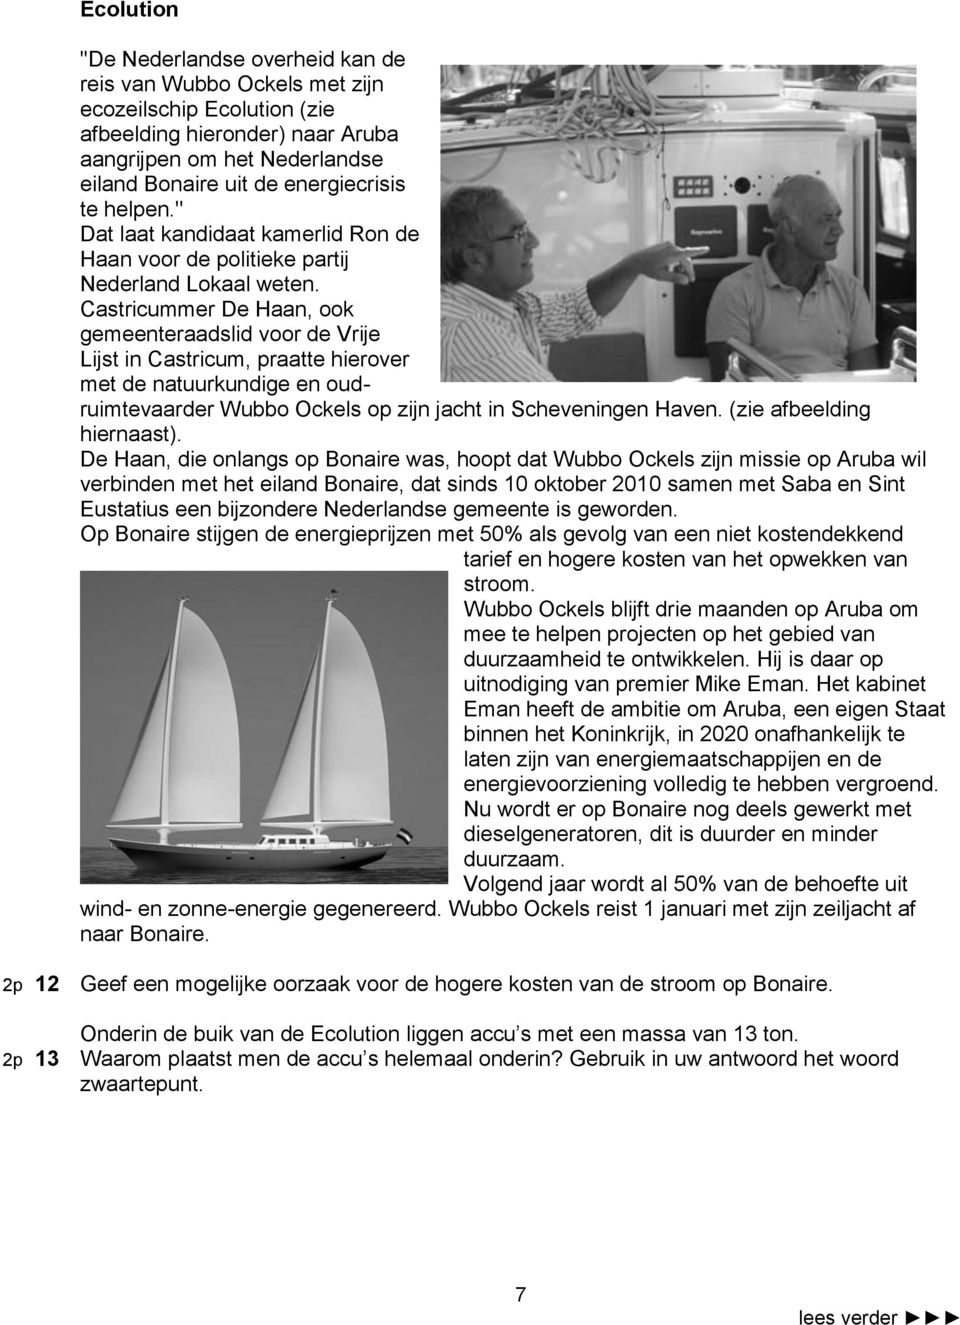 Castricummer De Haan, ook gemeenteraadslid voor de Vrije Lijst in Castricum, praatte hierover met de natuurkundige en oudruimtevaarder Wubbo Ockels op zijn jacht in Scheveningen Haven.